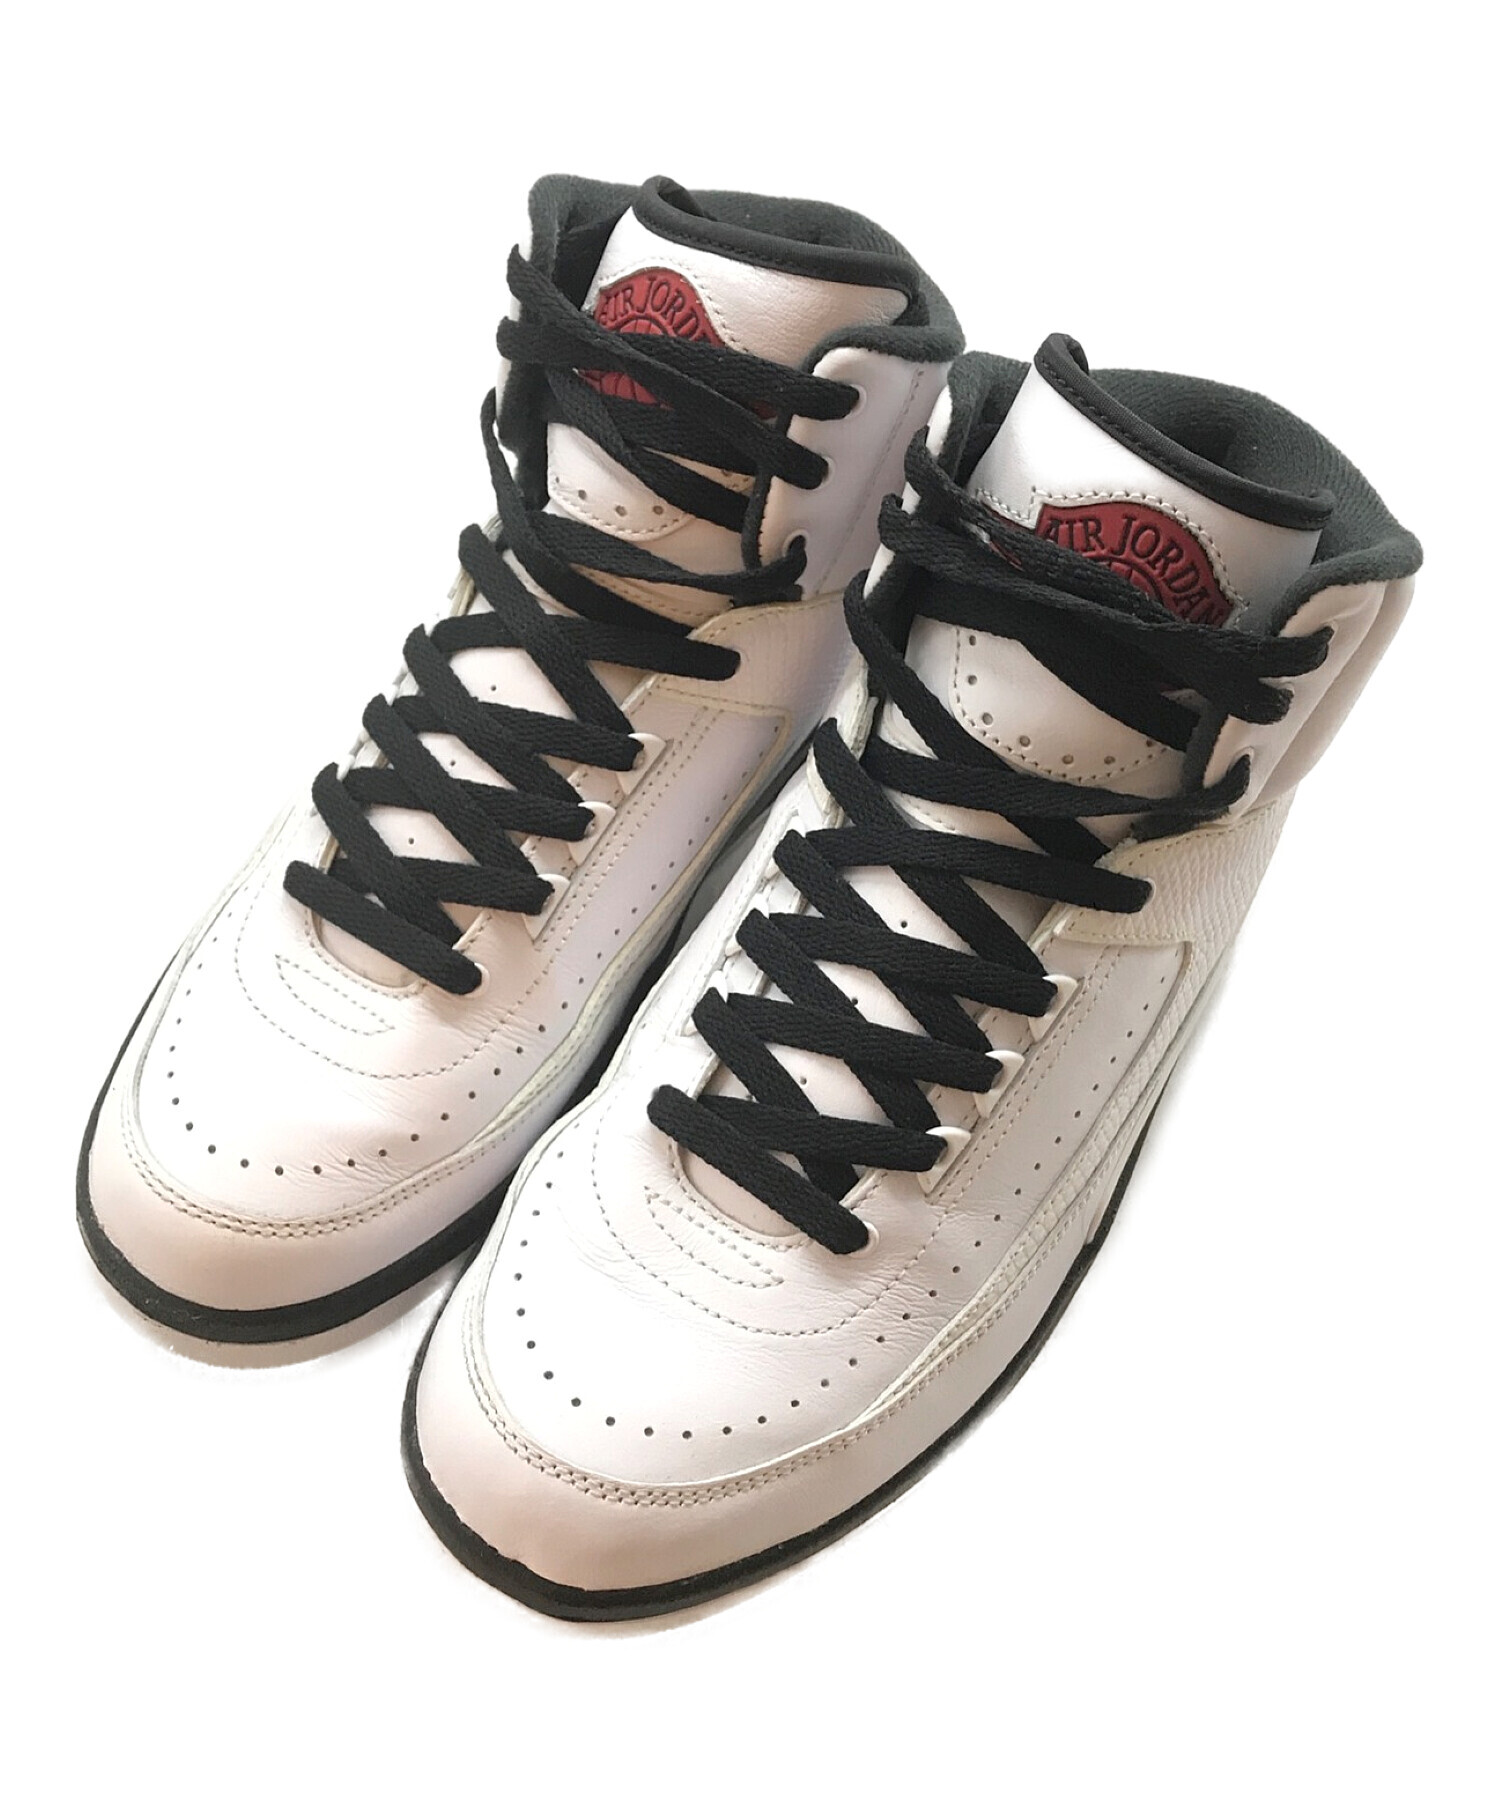 Nike Air Jordan 2 OG "Chicago" メンズ 27.5㎝